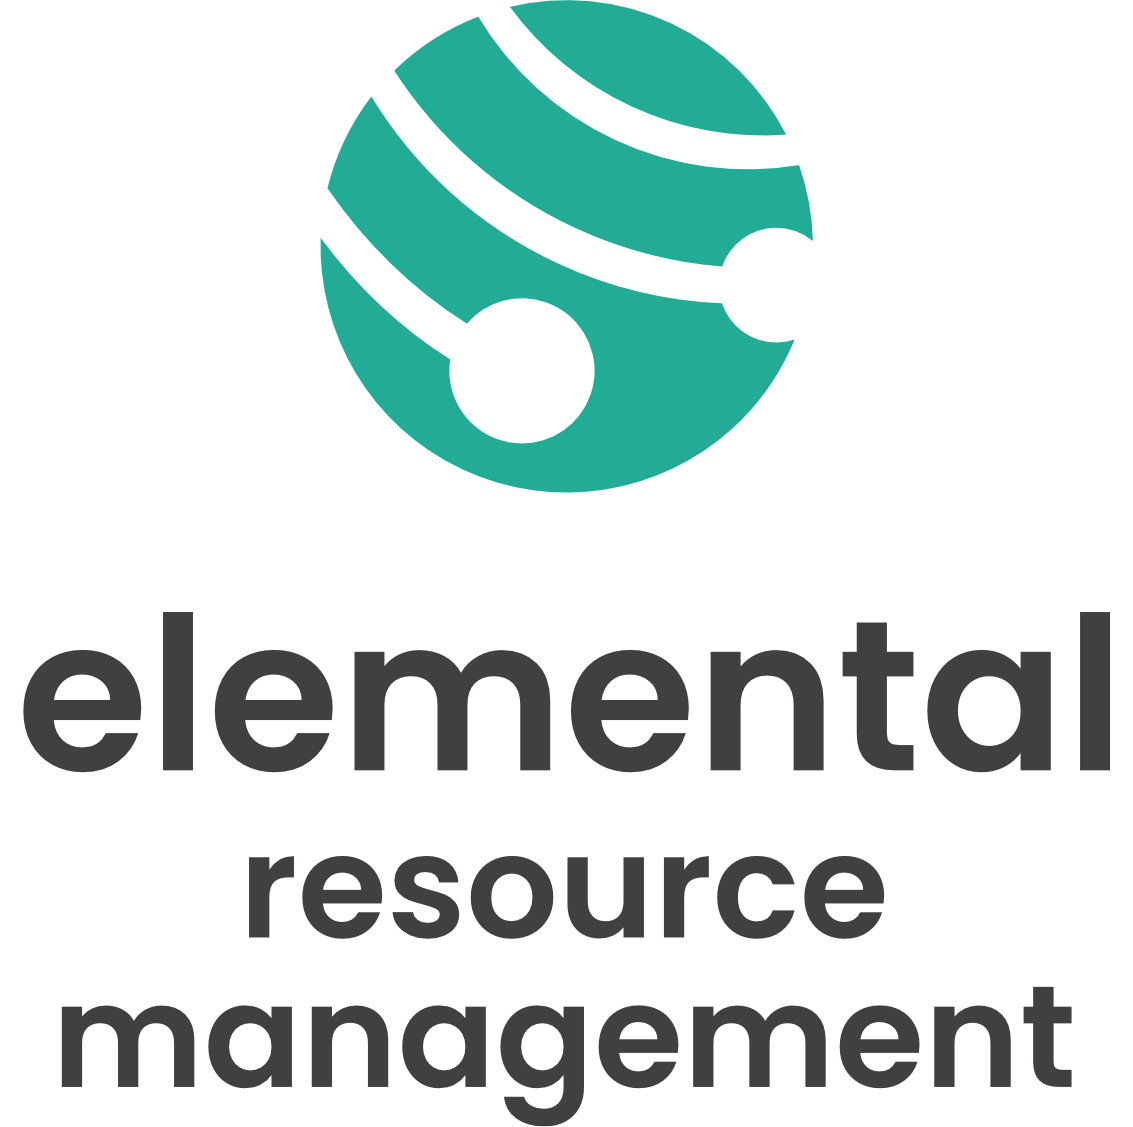 elemental-resource-management